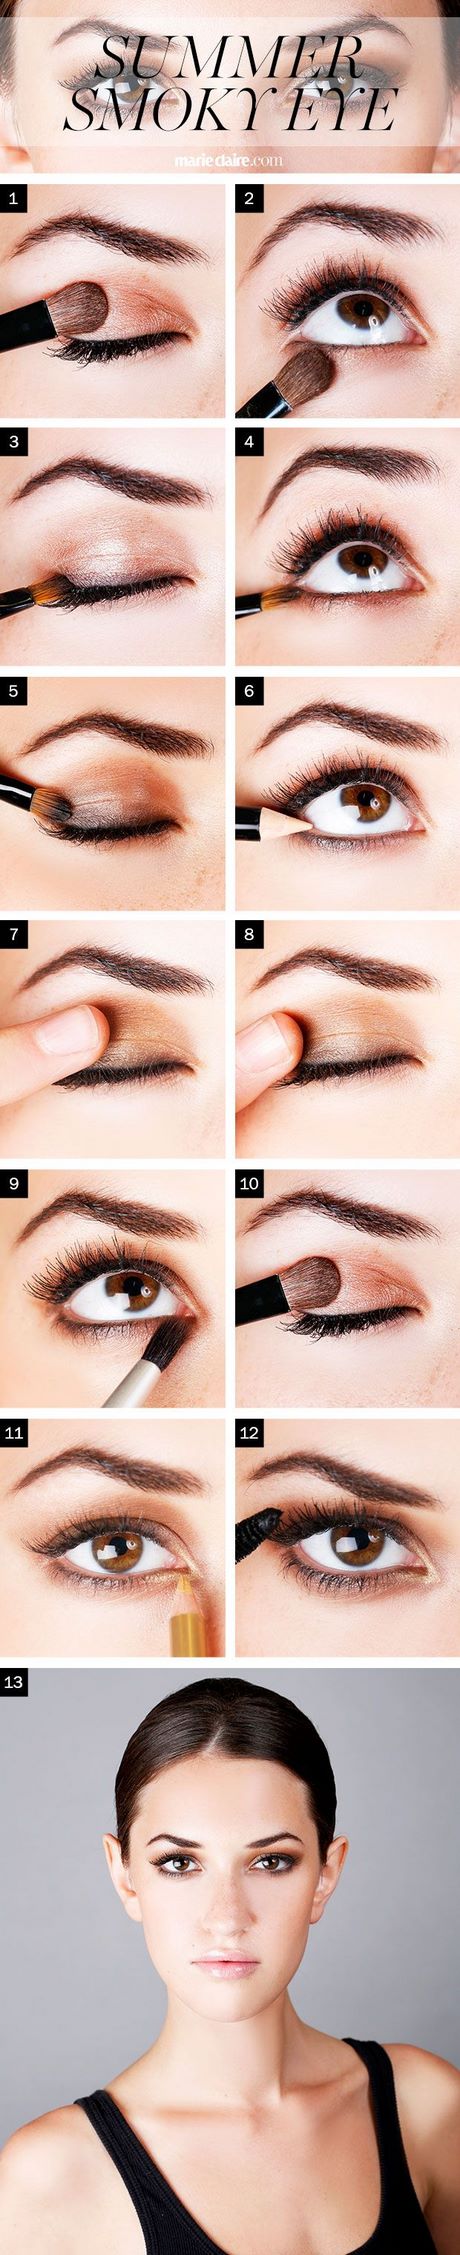 oog-makeup-tutorial-20 Oog make-up tutorial